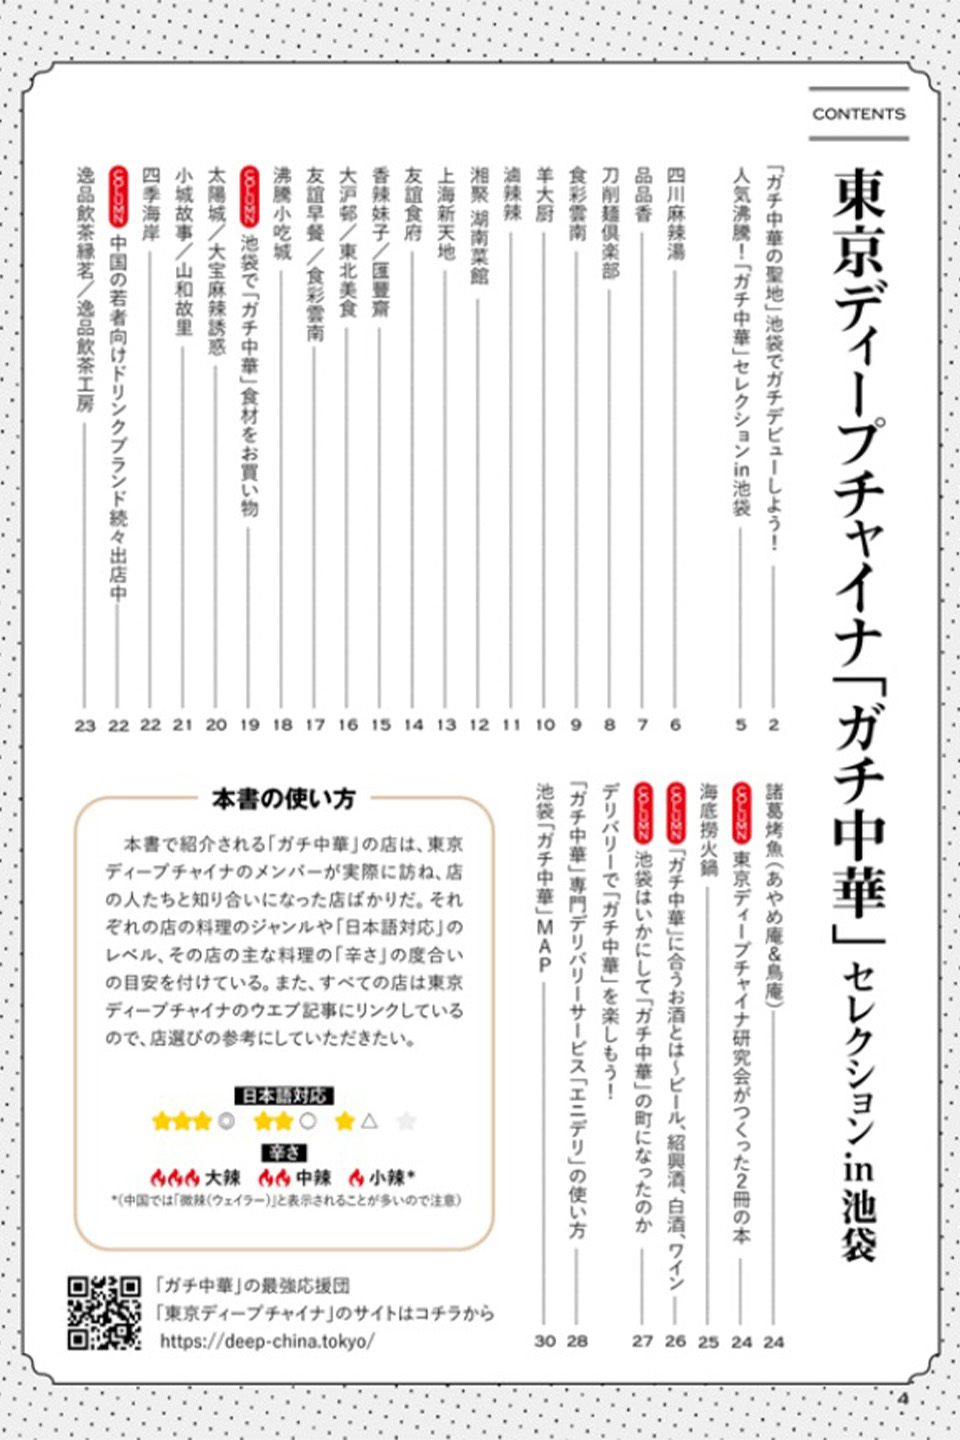 東京ディープチャイナ「ガチ中華」セレクション in 池袋 Kindle版